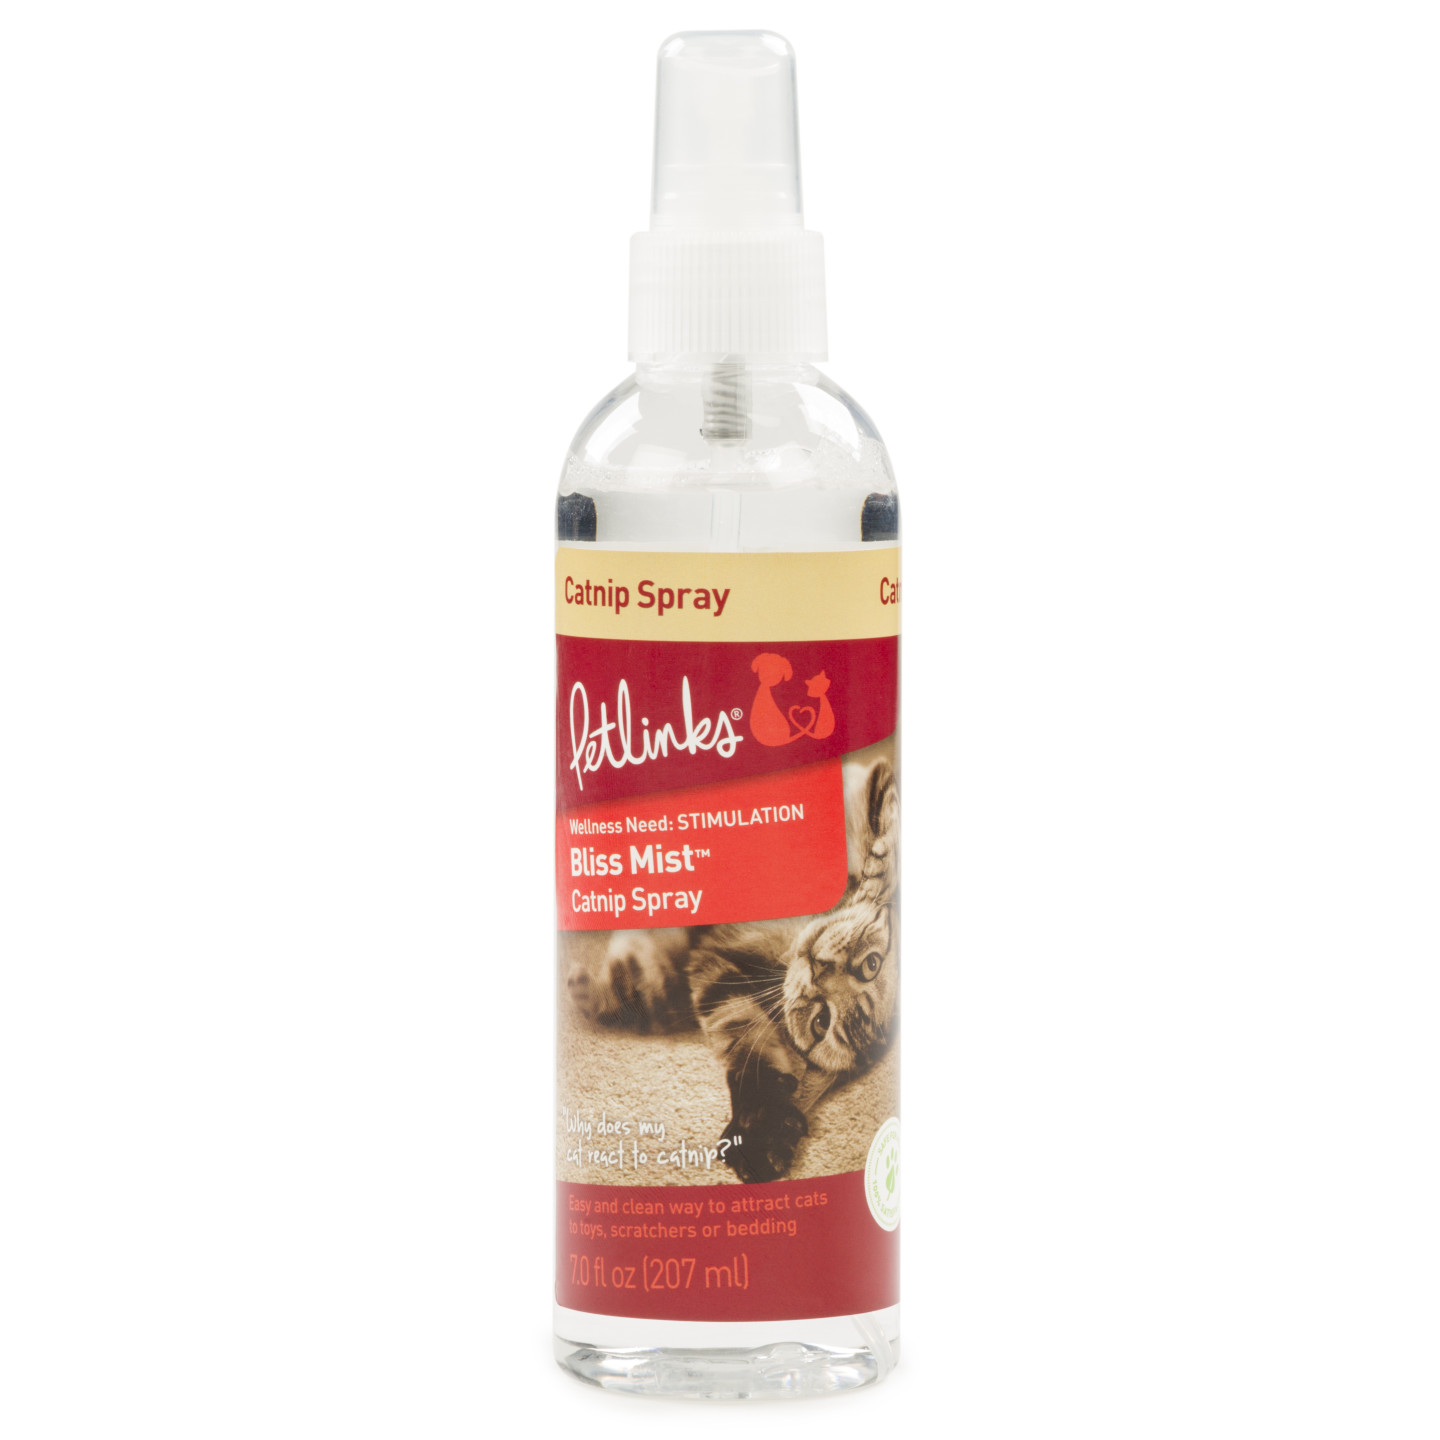 SmartyKat Catnip Mist Catnip Spray 1ea/7 oz – Dexters Buddies